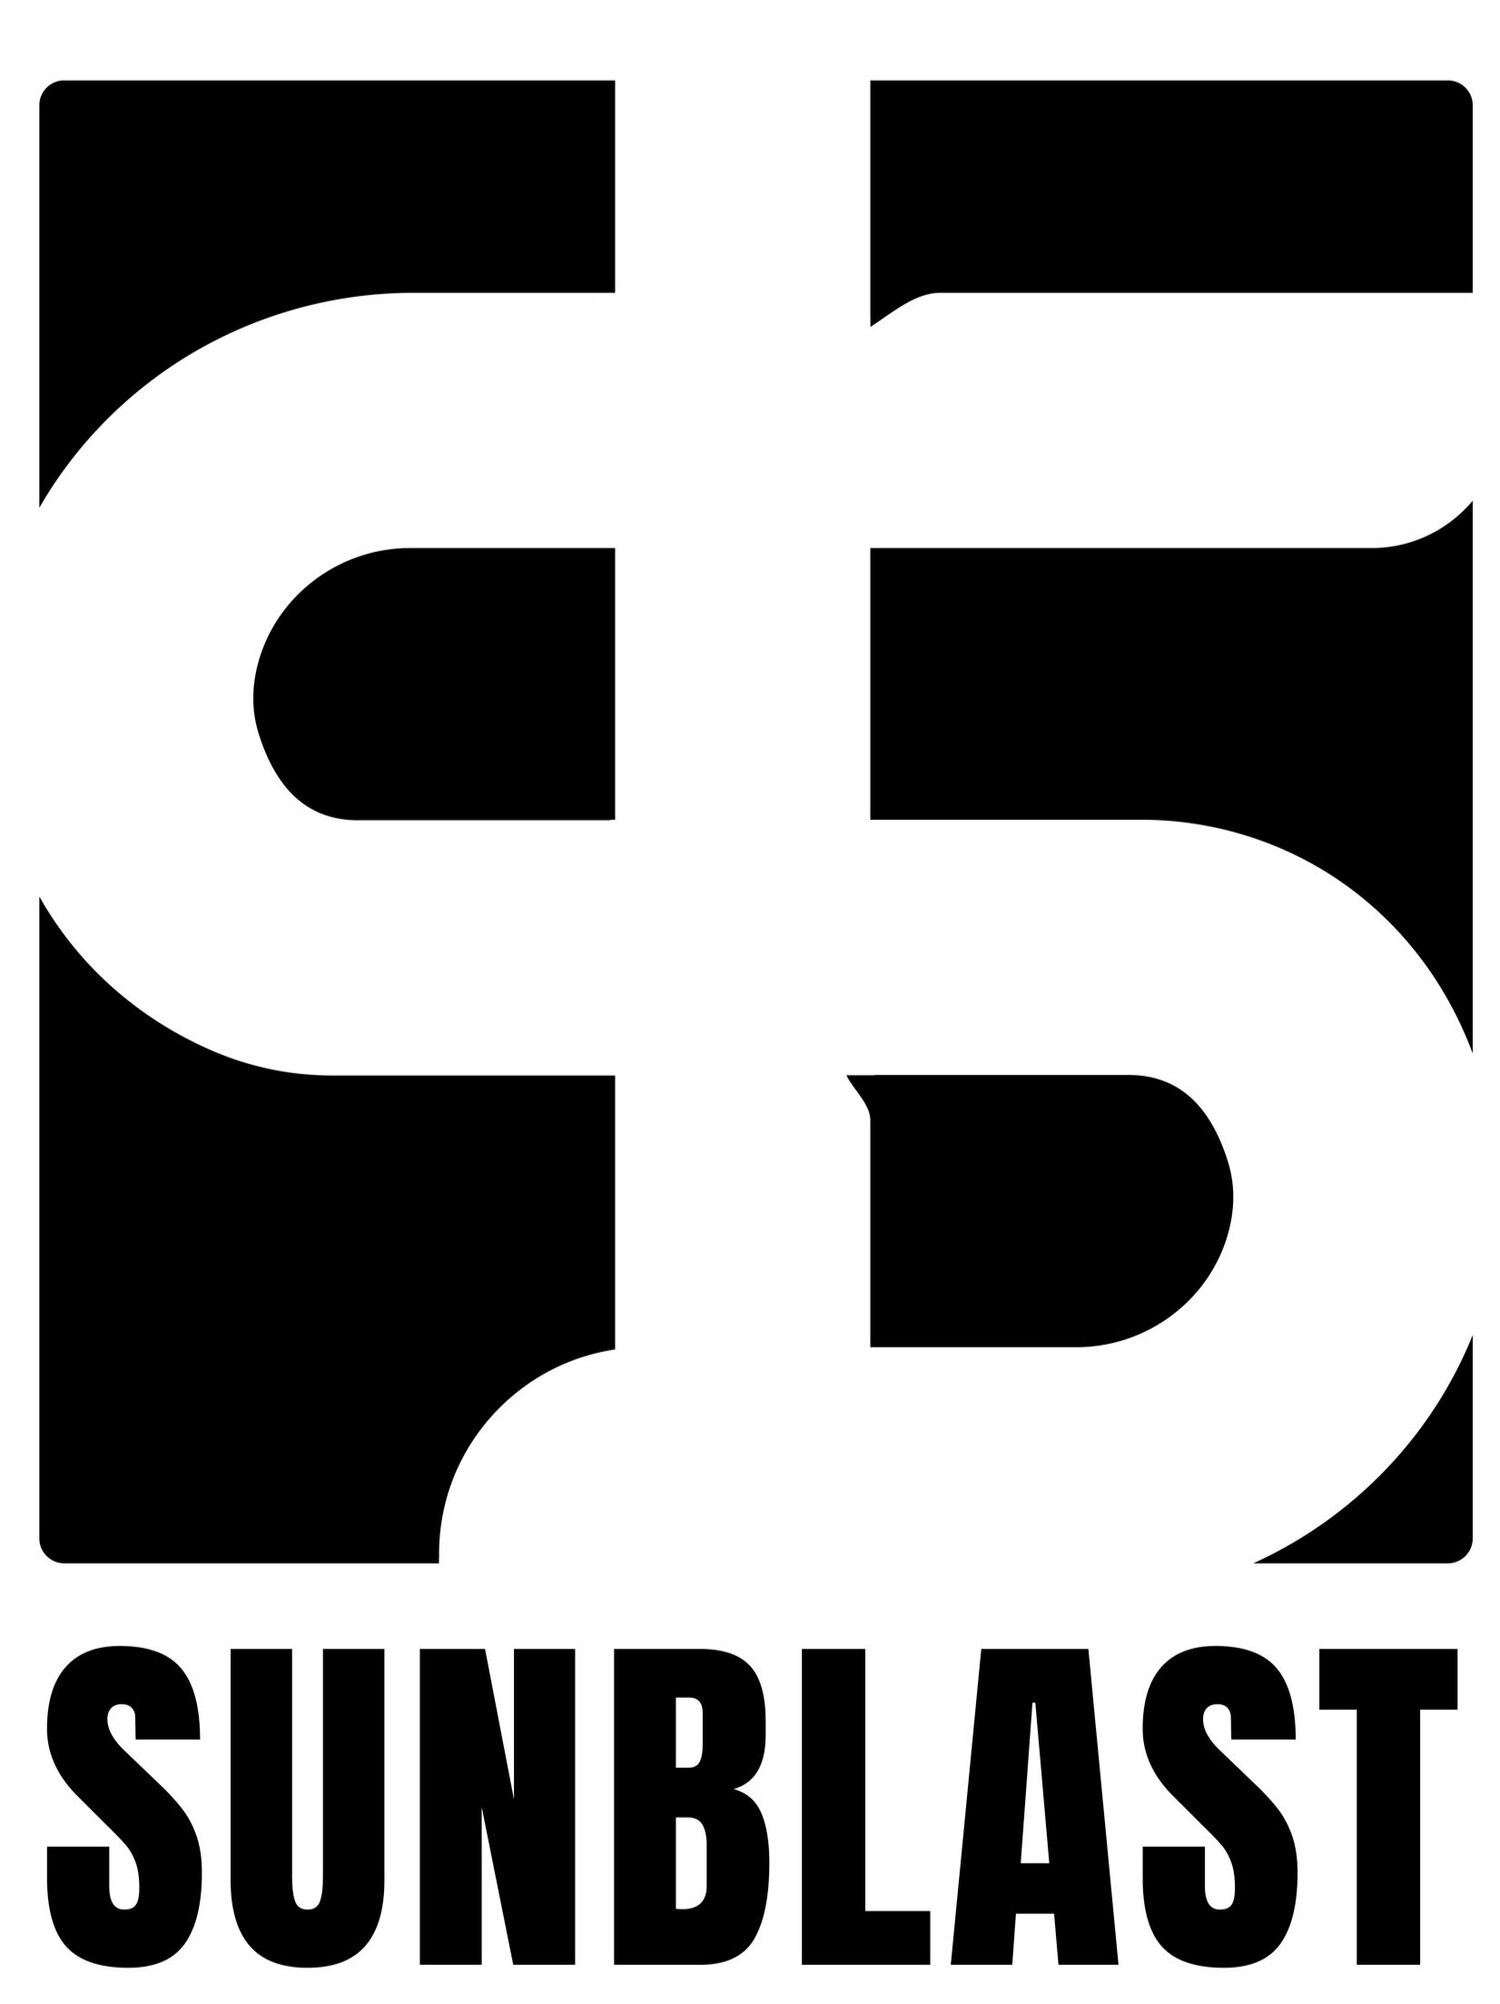 Sunblast main website